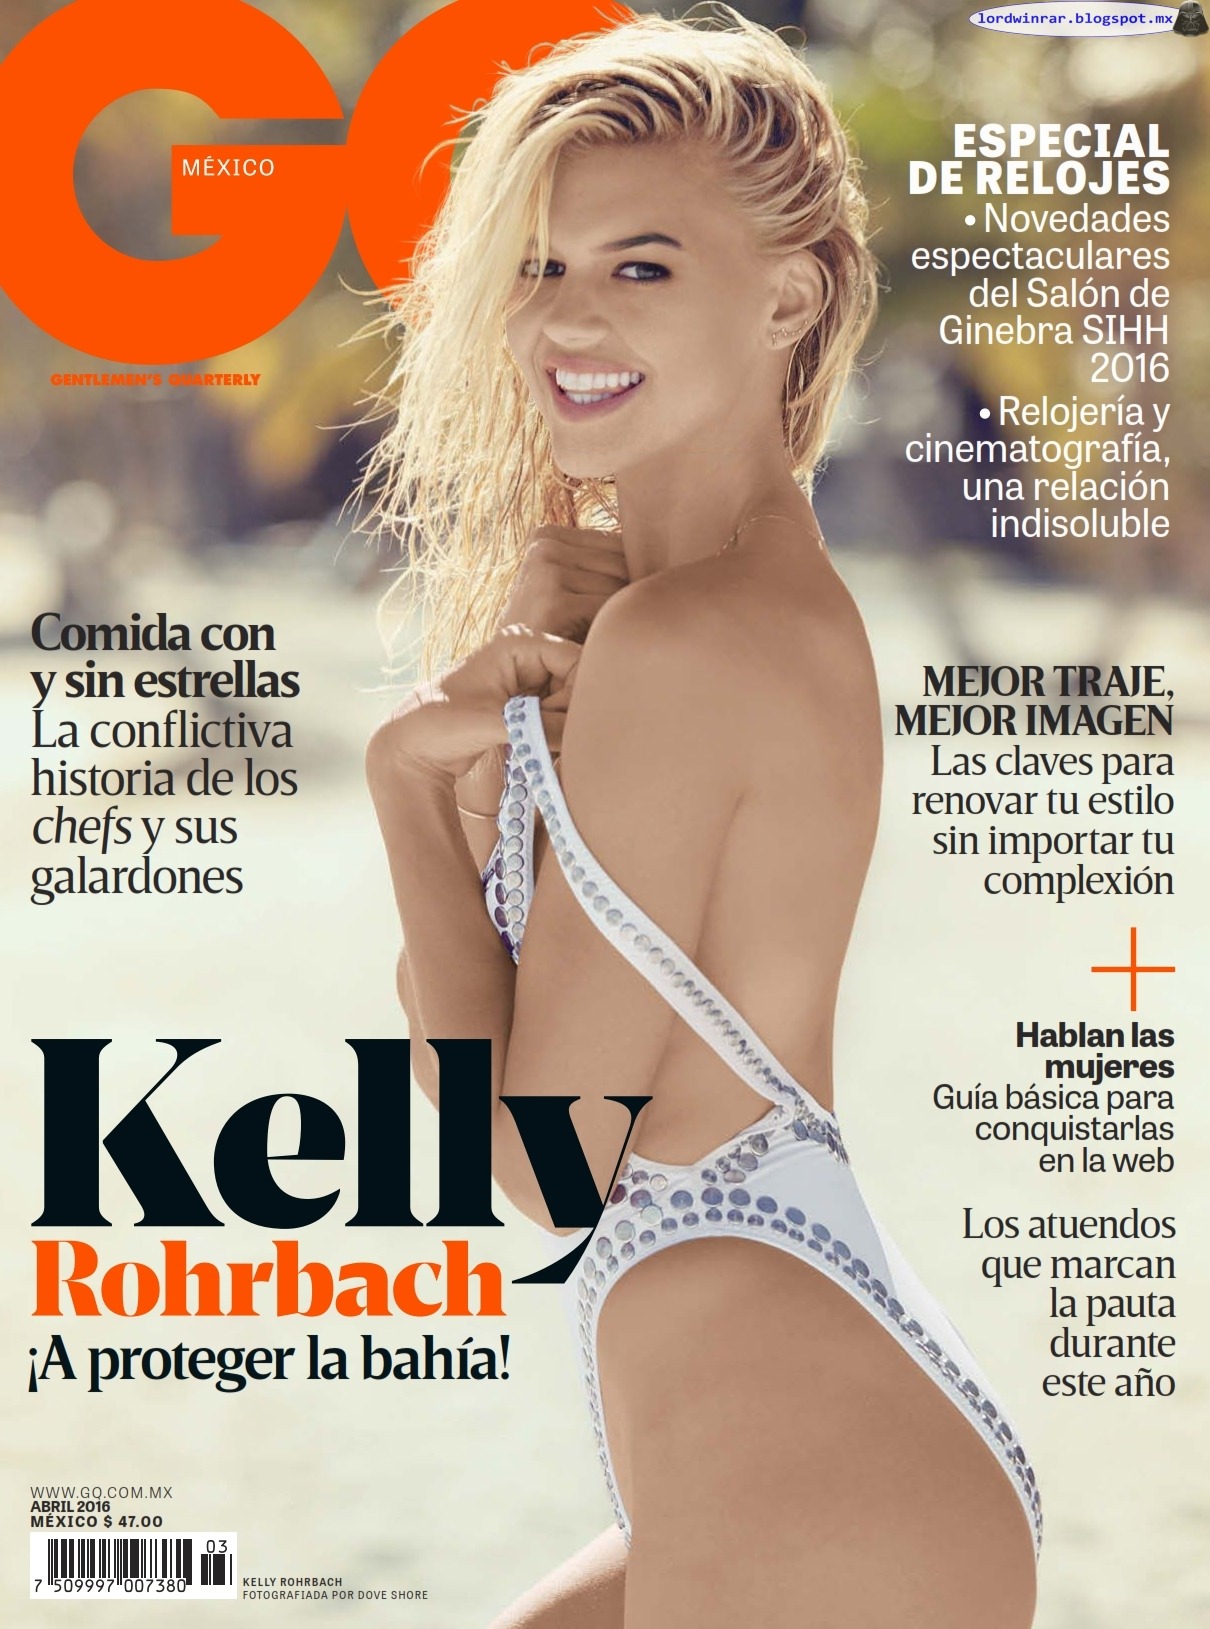   Kelly Rohrbach - GQ Mexico 2016 Abril (15 Fotos HQ)Kelly Rohrbach semi desnuda